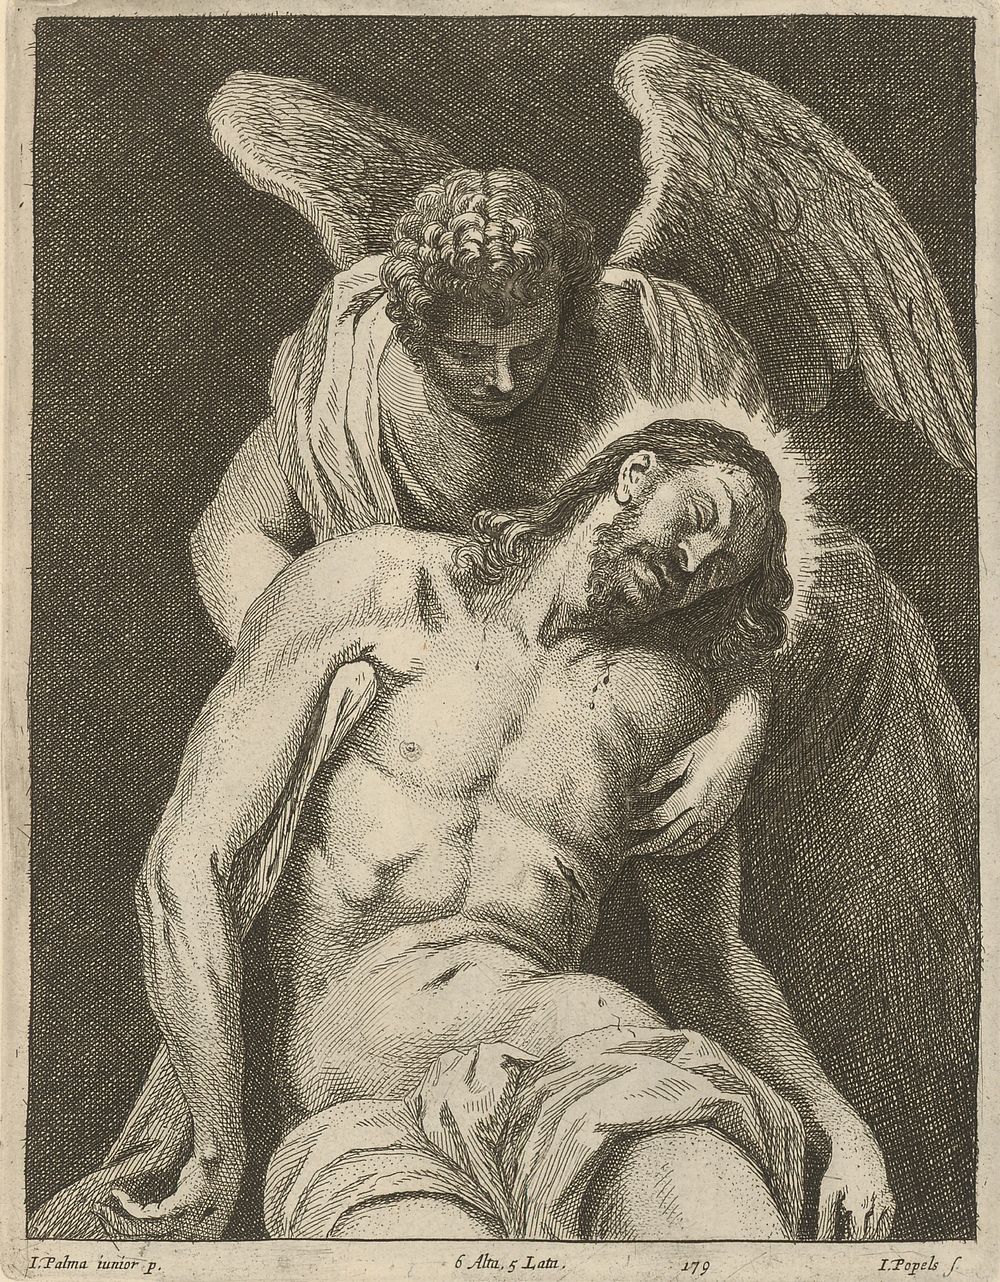 Angel pieta, David Teniers Jr